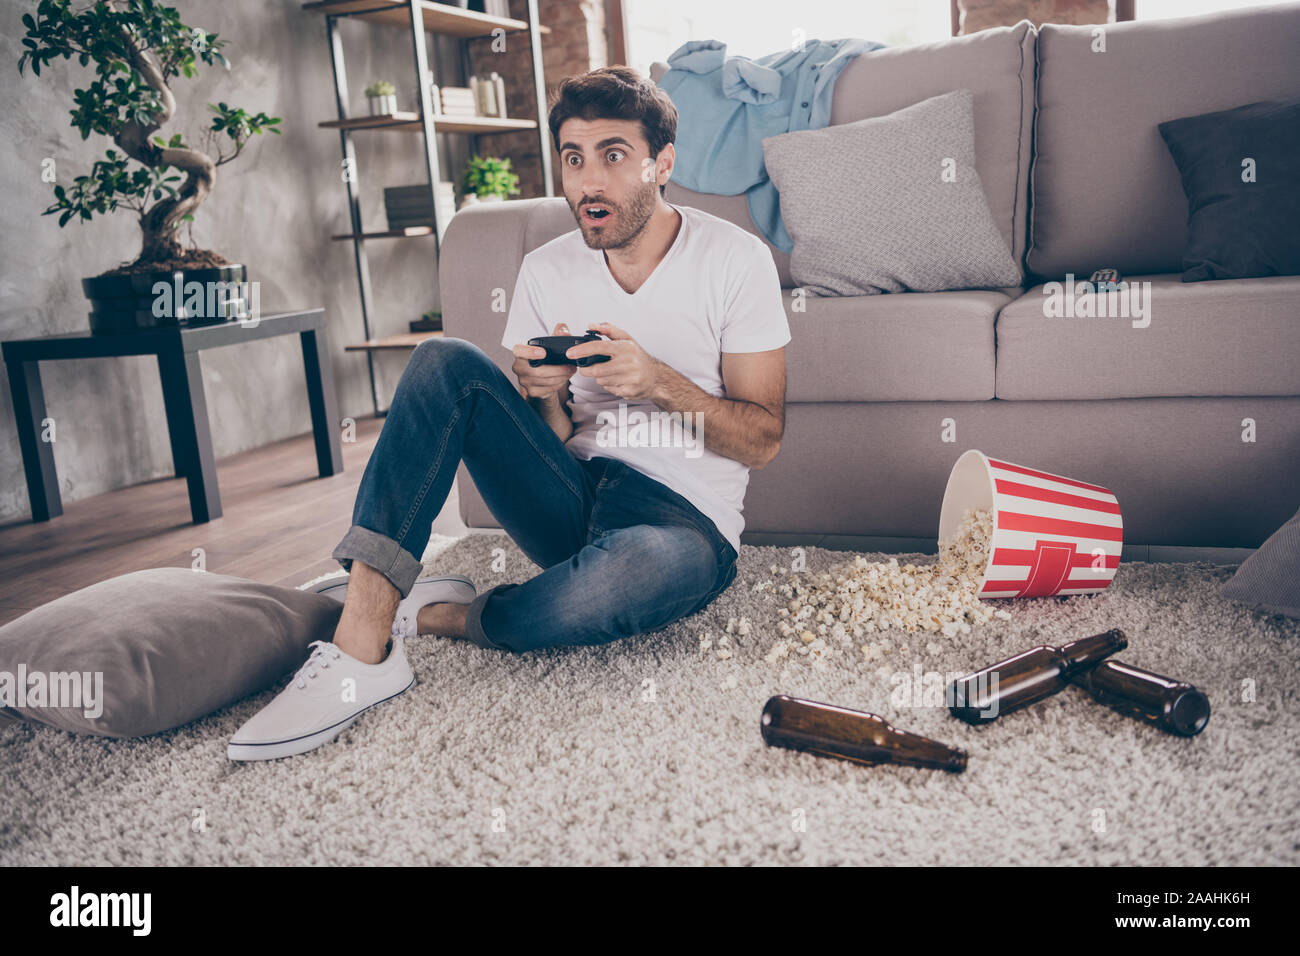 Photo de race mixte arabian guy sitting leaning tapis canapé maintenez joystick jeux vidéos veulent gagner excité les bouteilles de bière vides sur le plancher popcorn Banque D'Images